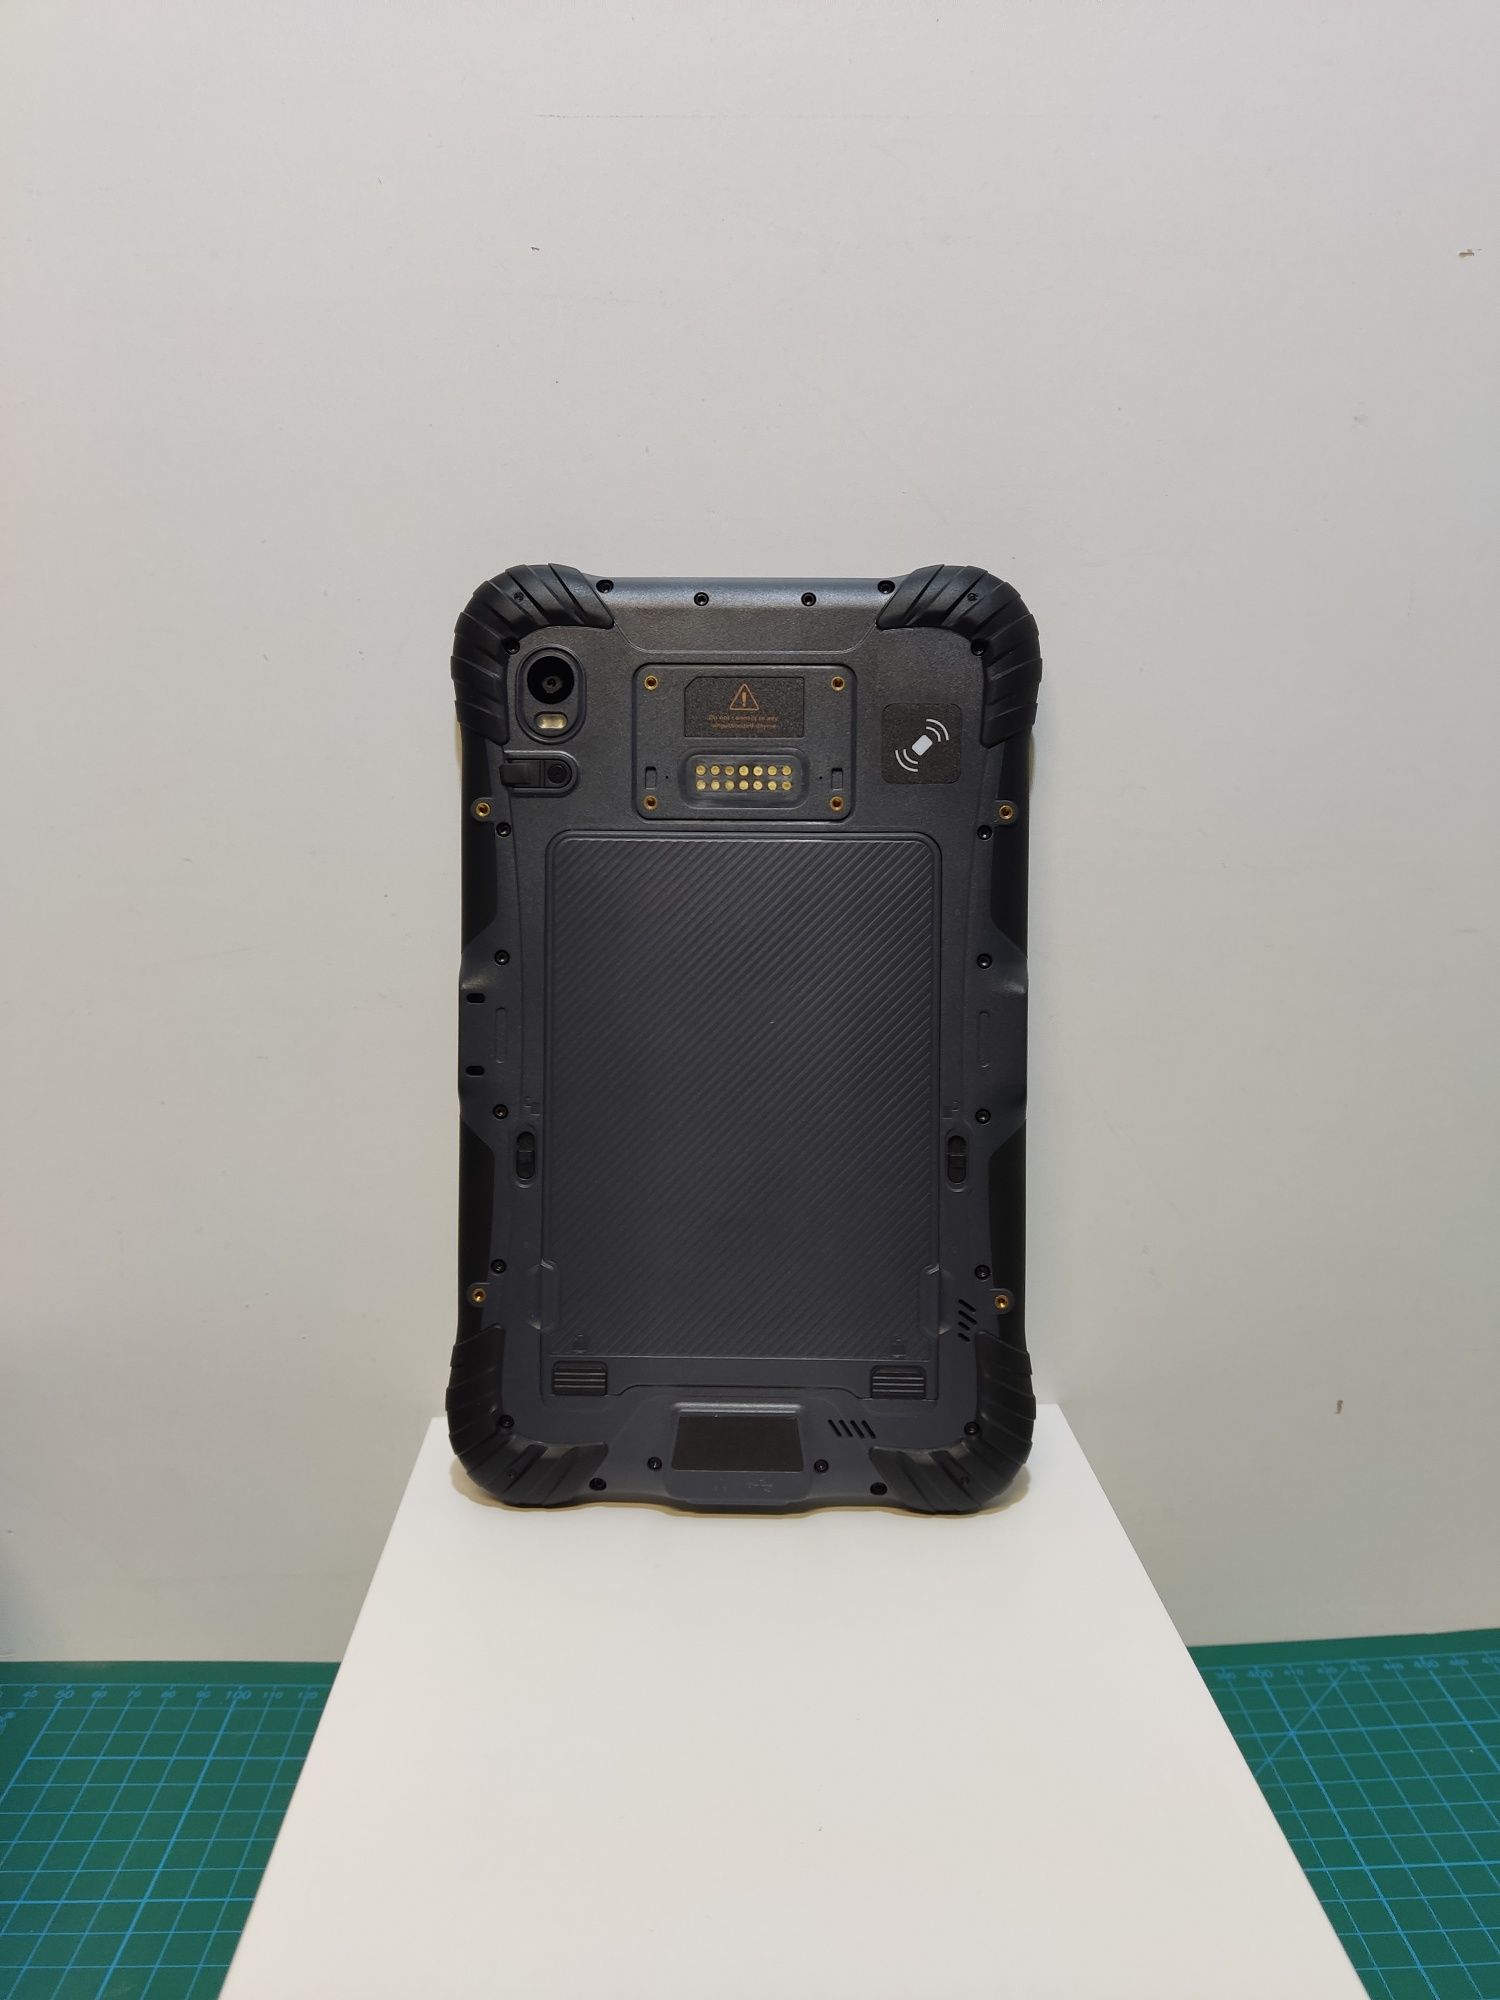 Новый защищенный планшет Sonim RS80 LTE Snapdragon 626 NFC Количество